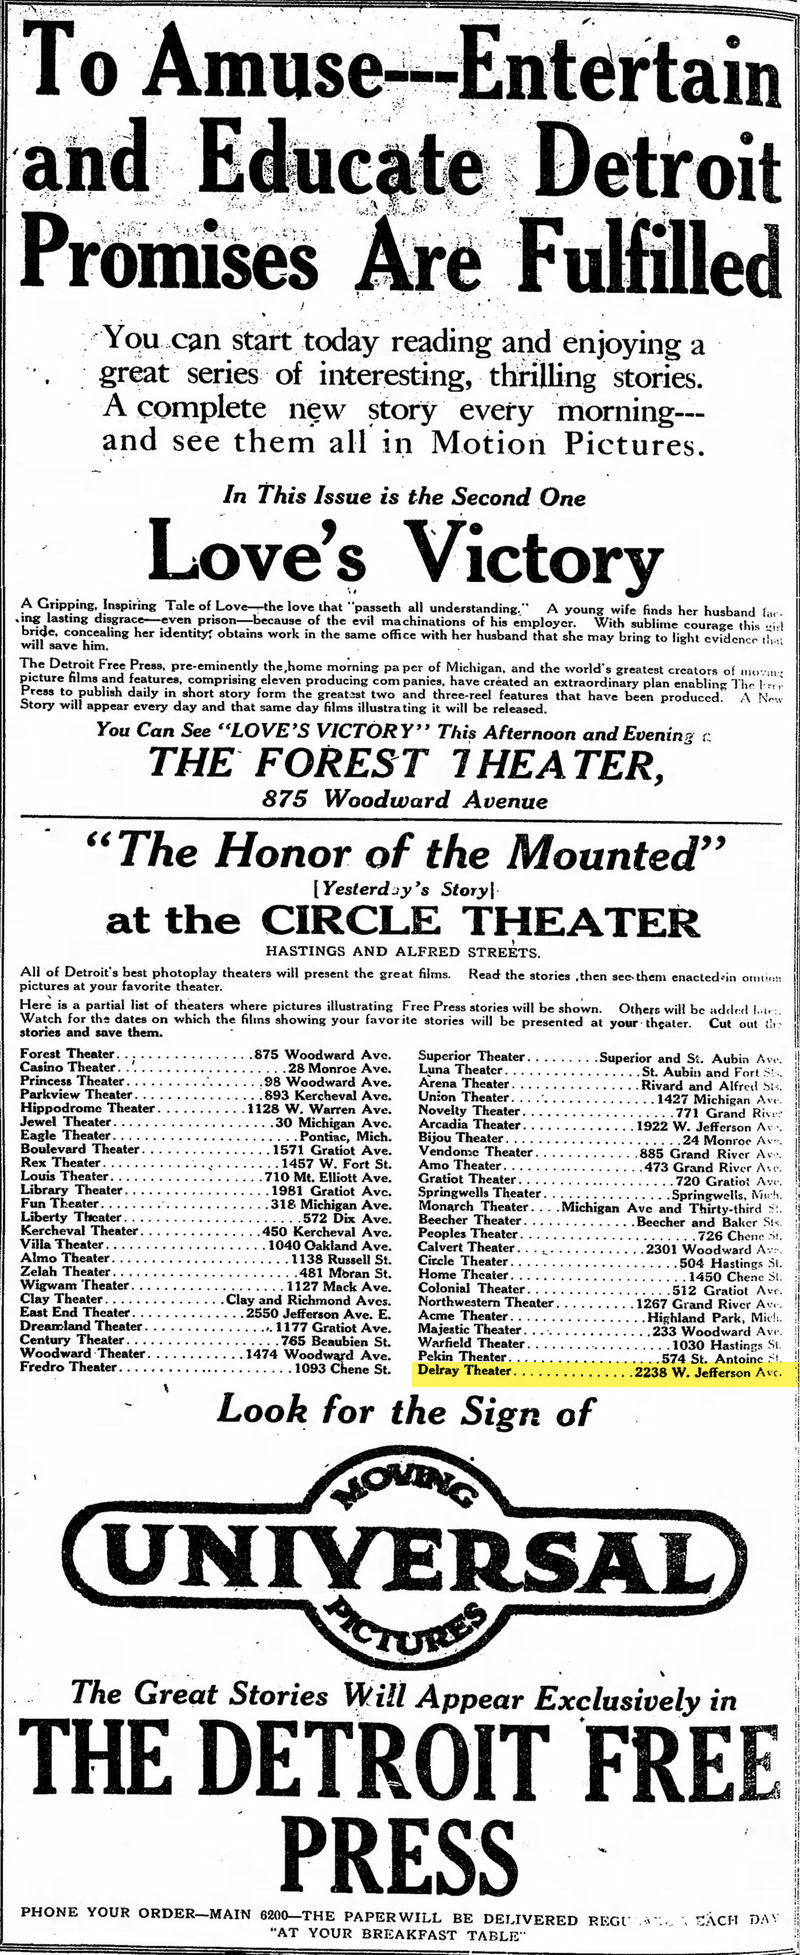 Delray Theatre - Feb 24 1914 Ad (newer photo)